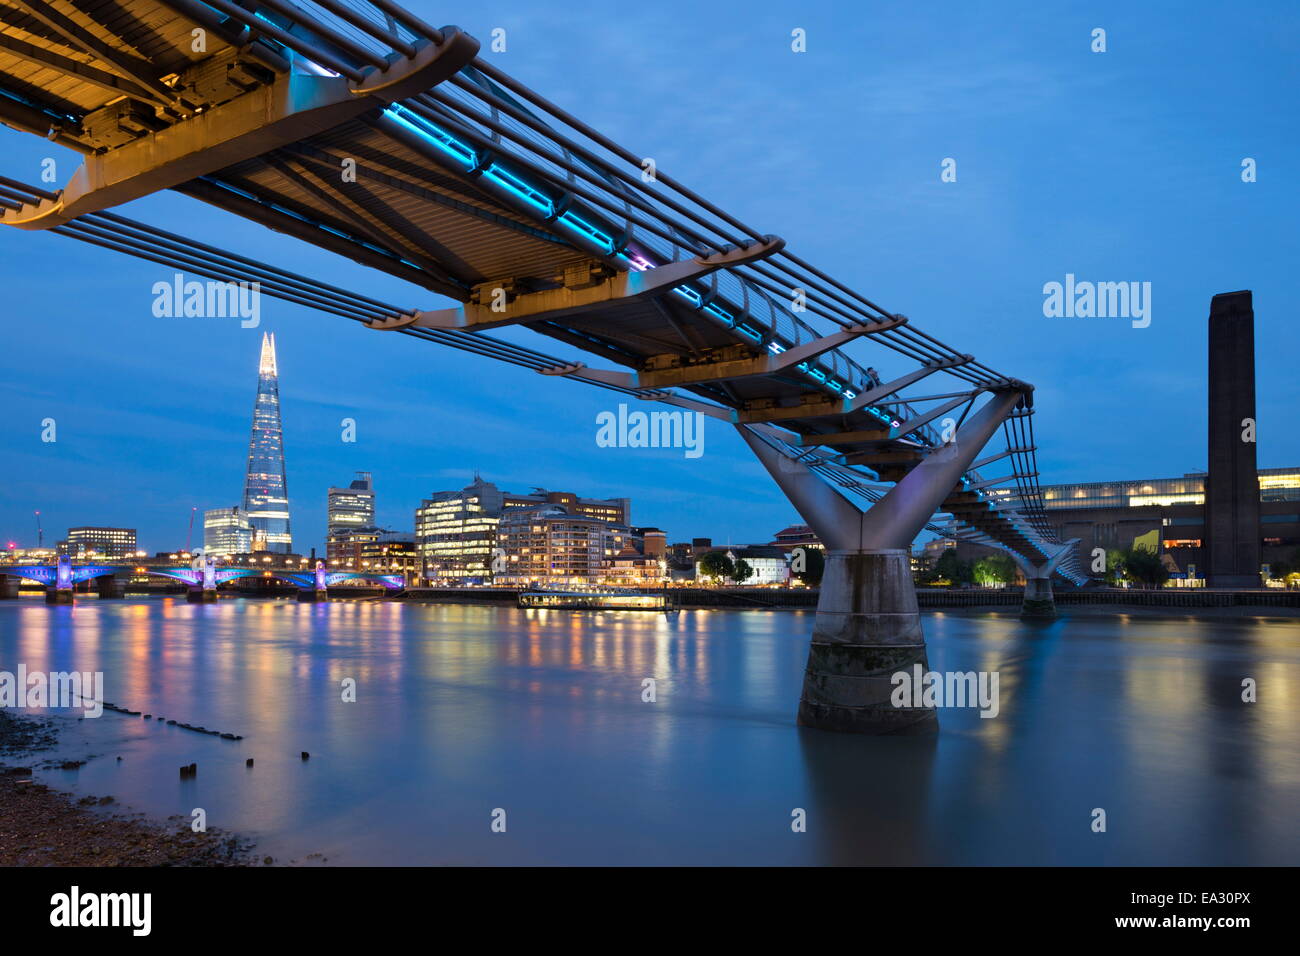 Vue sur la Tamise avec le Millennium Bridge et la Tate Modern et le fragment, Londres, Angleterre, Royaume-Uni, Europe Banque D'Images